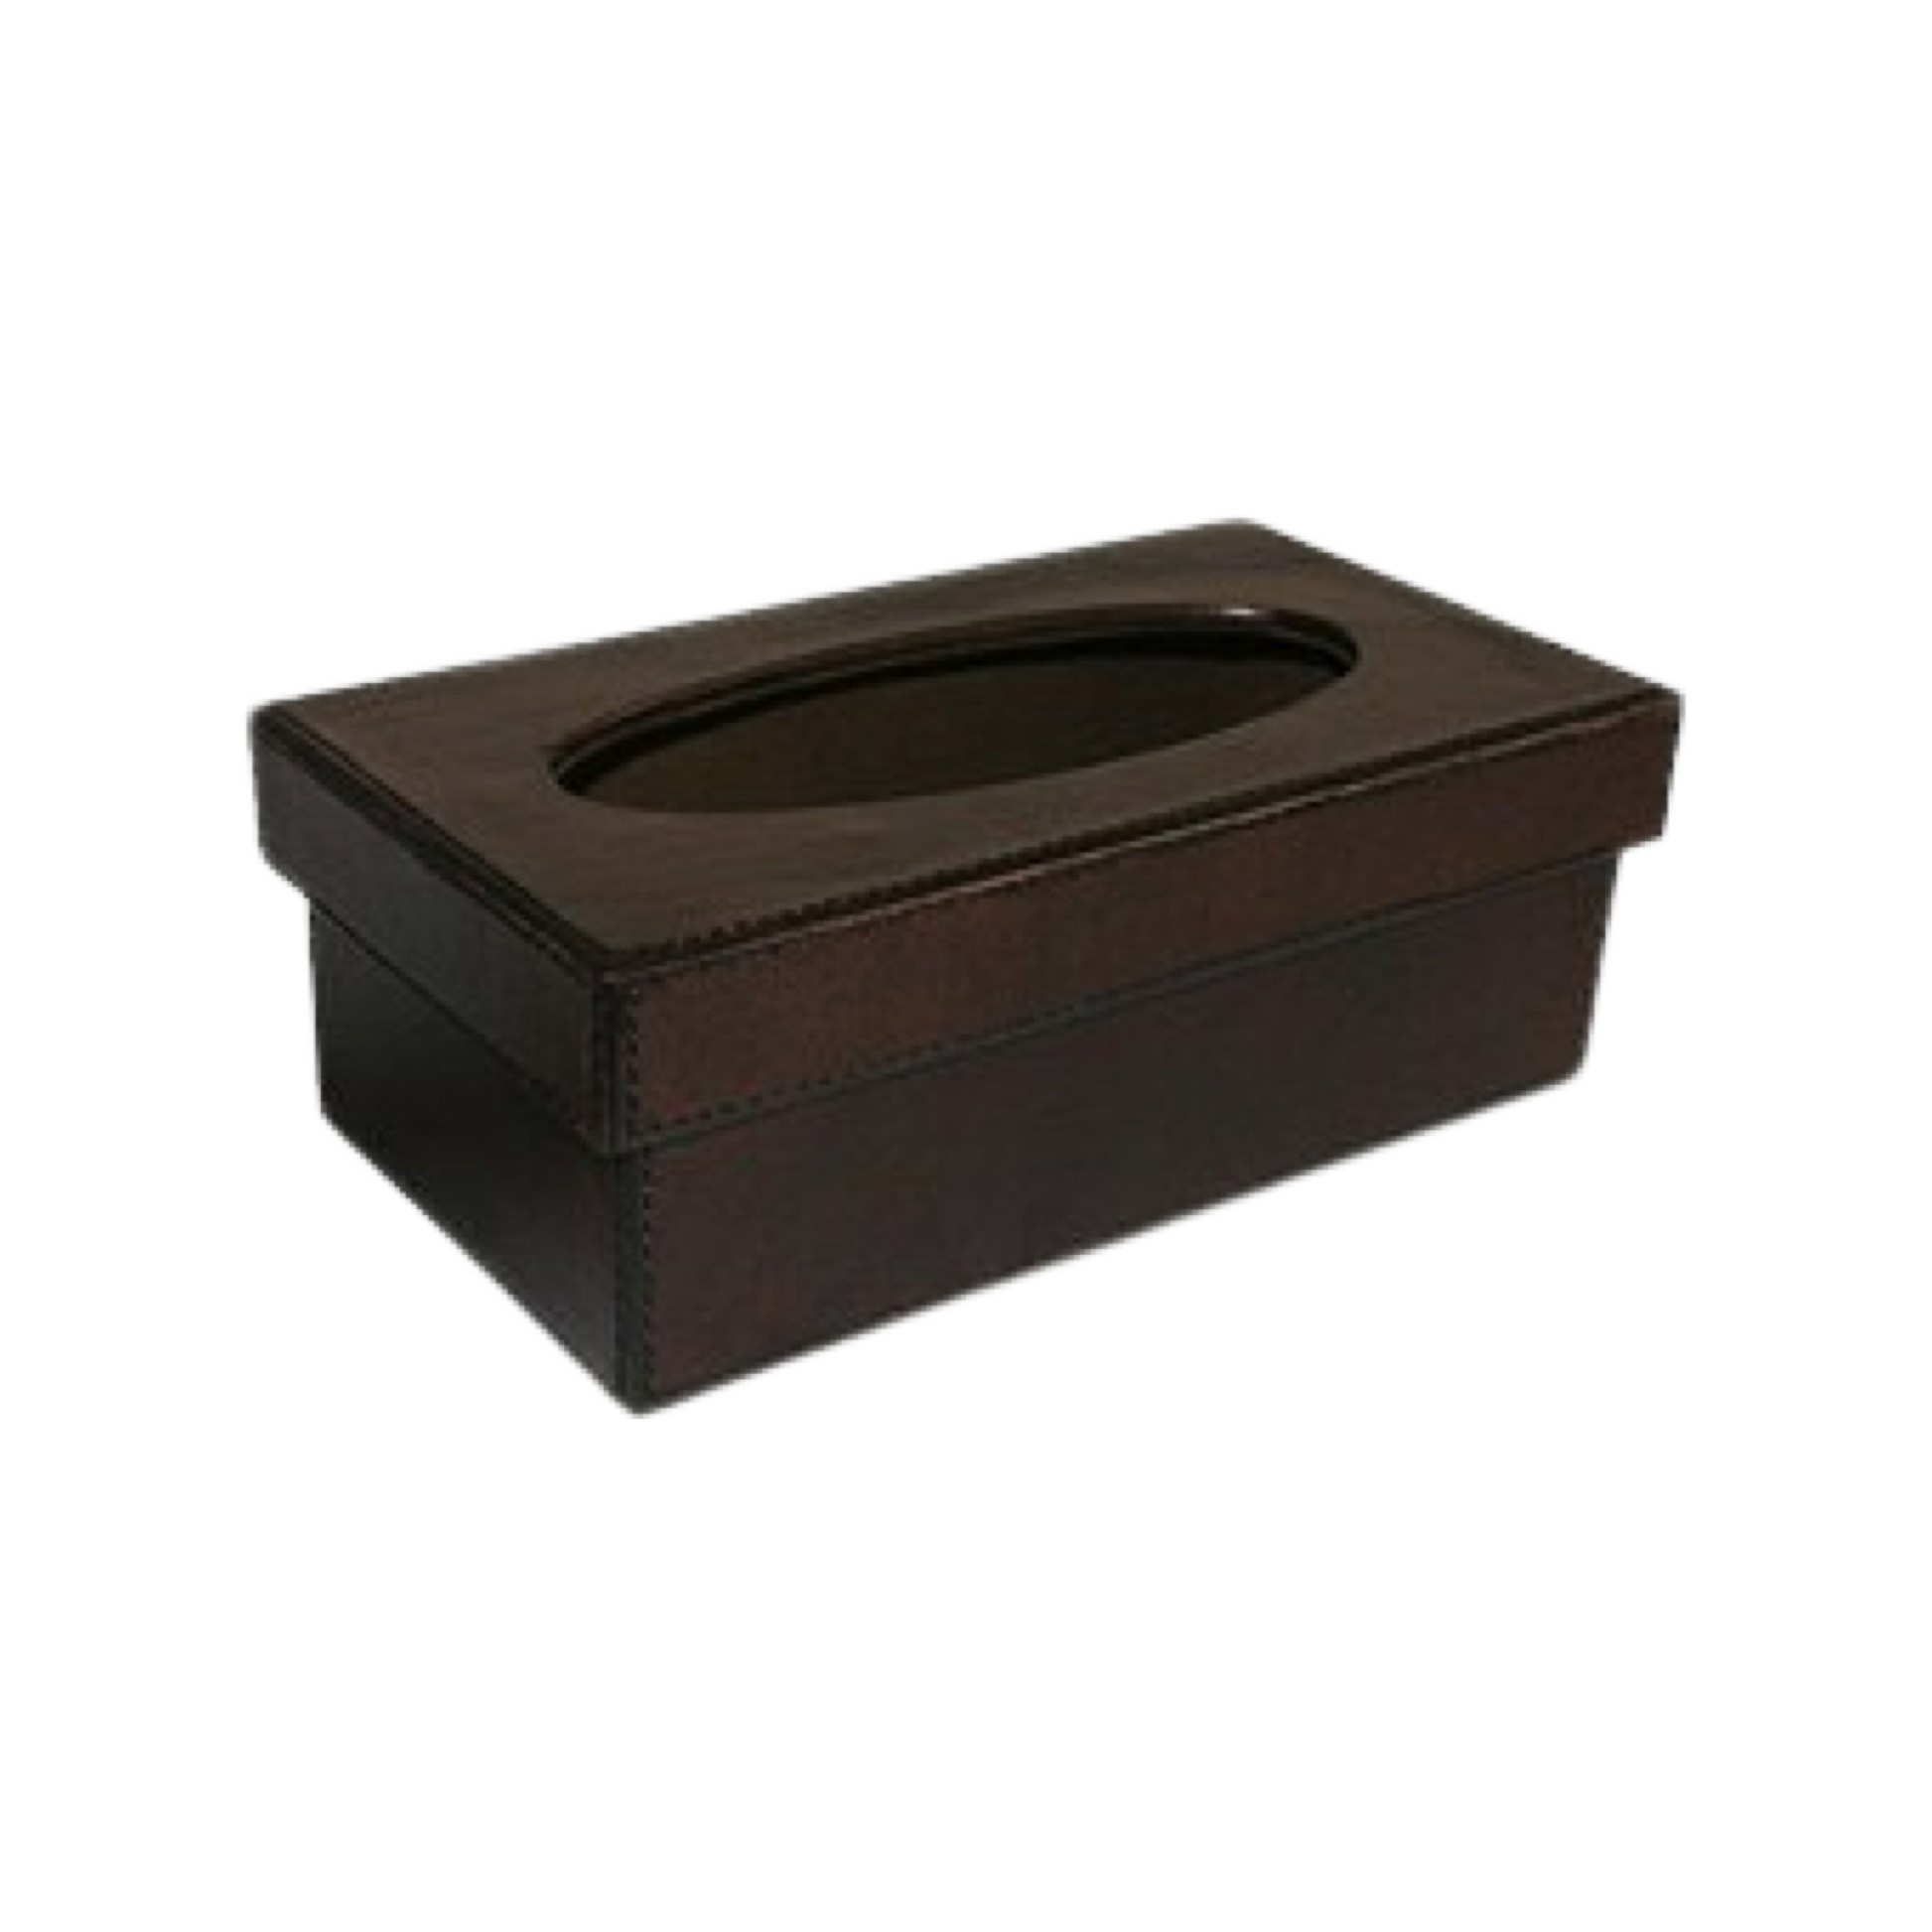 Leather Tissue Box - Dark Brown